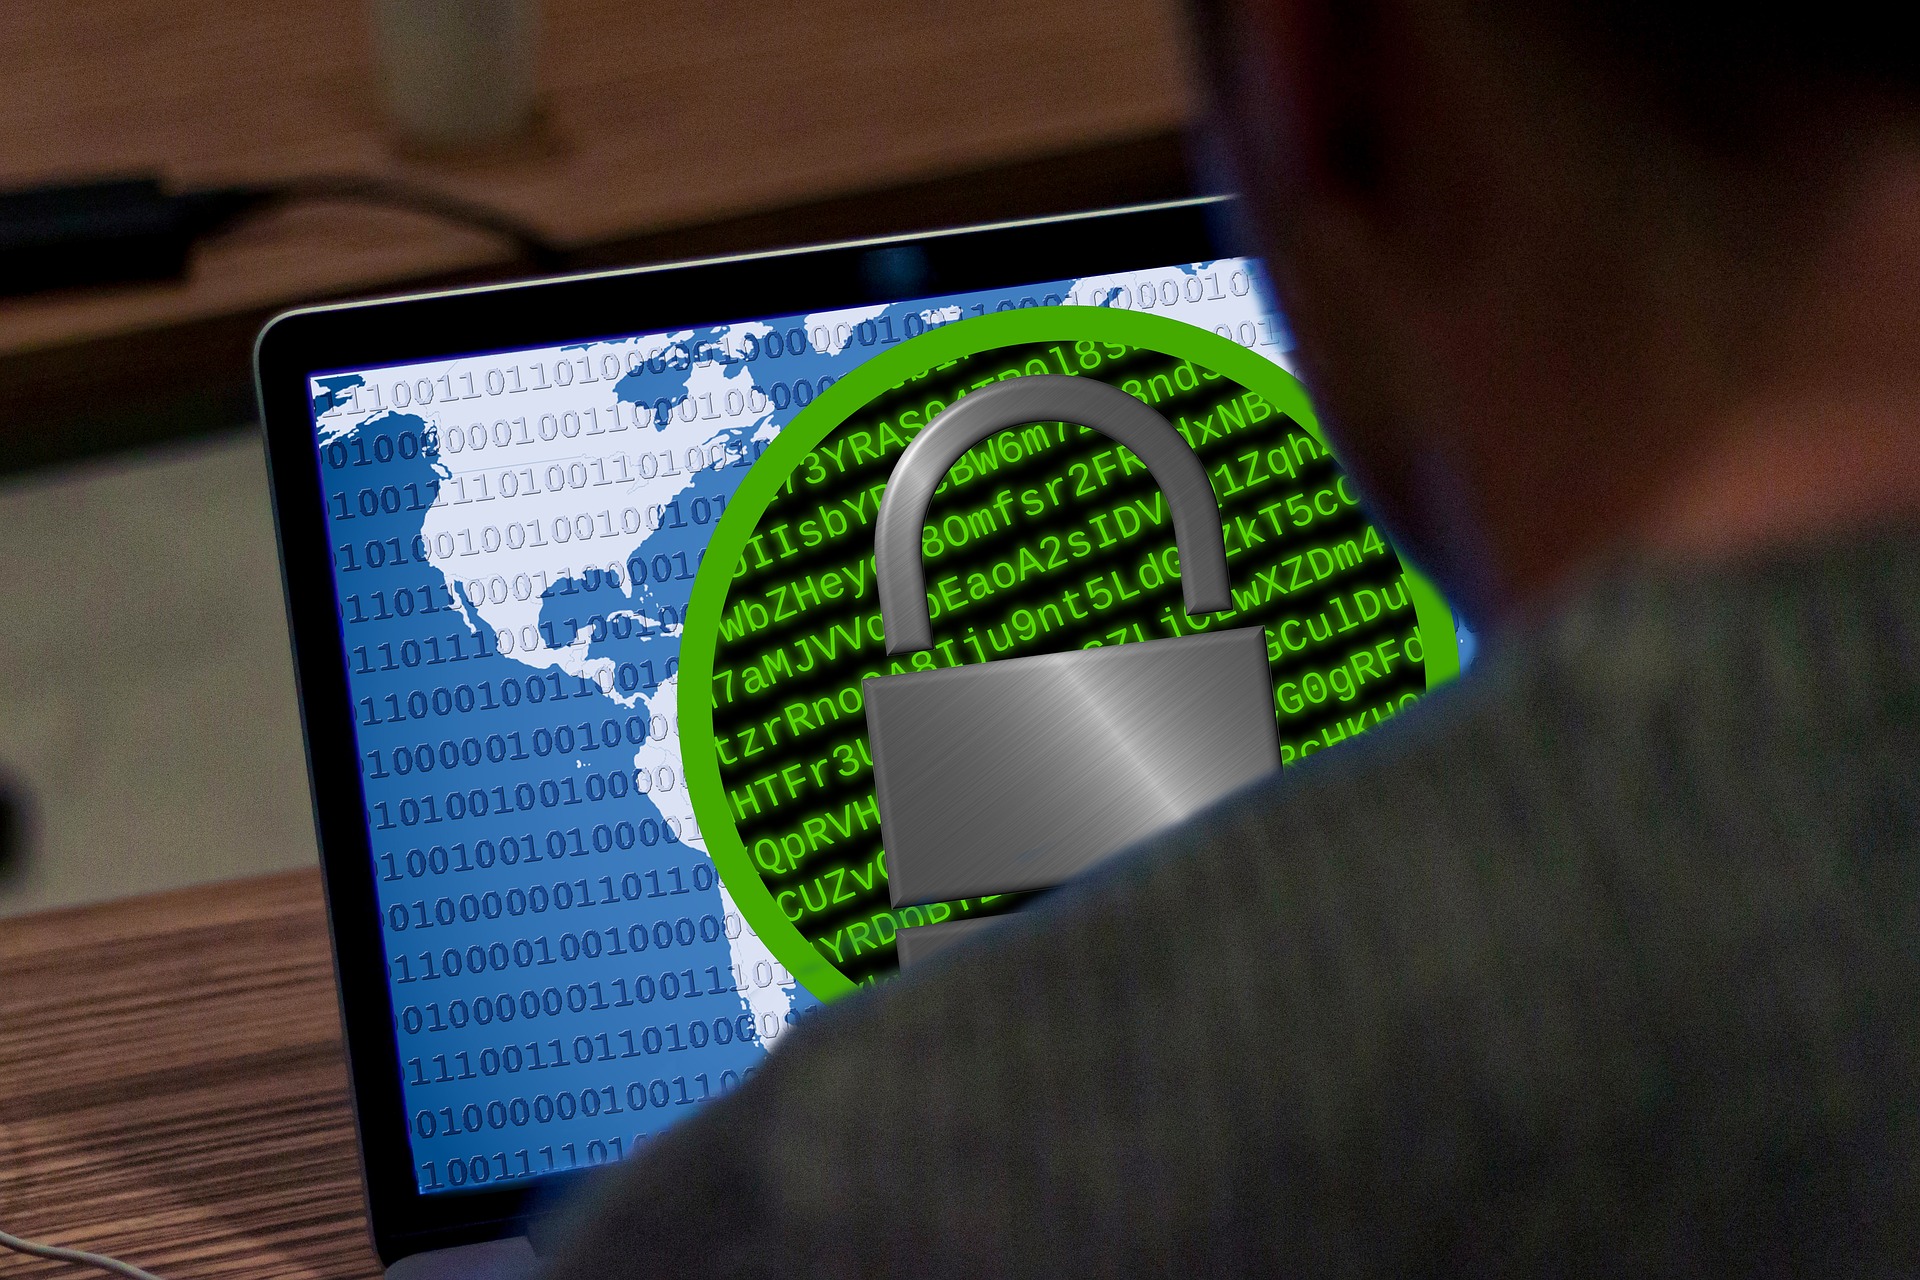 ExaGrid Tiered Backup Storage takaa parhaan suojan ransomware-hyökkäyksiltä